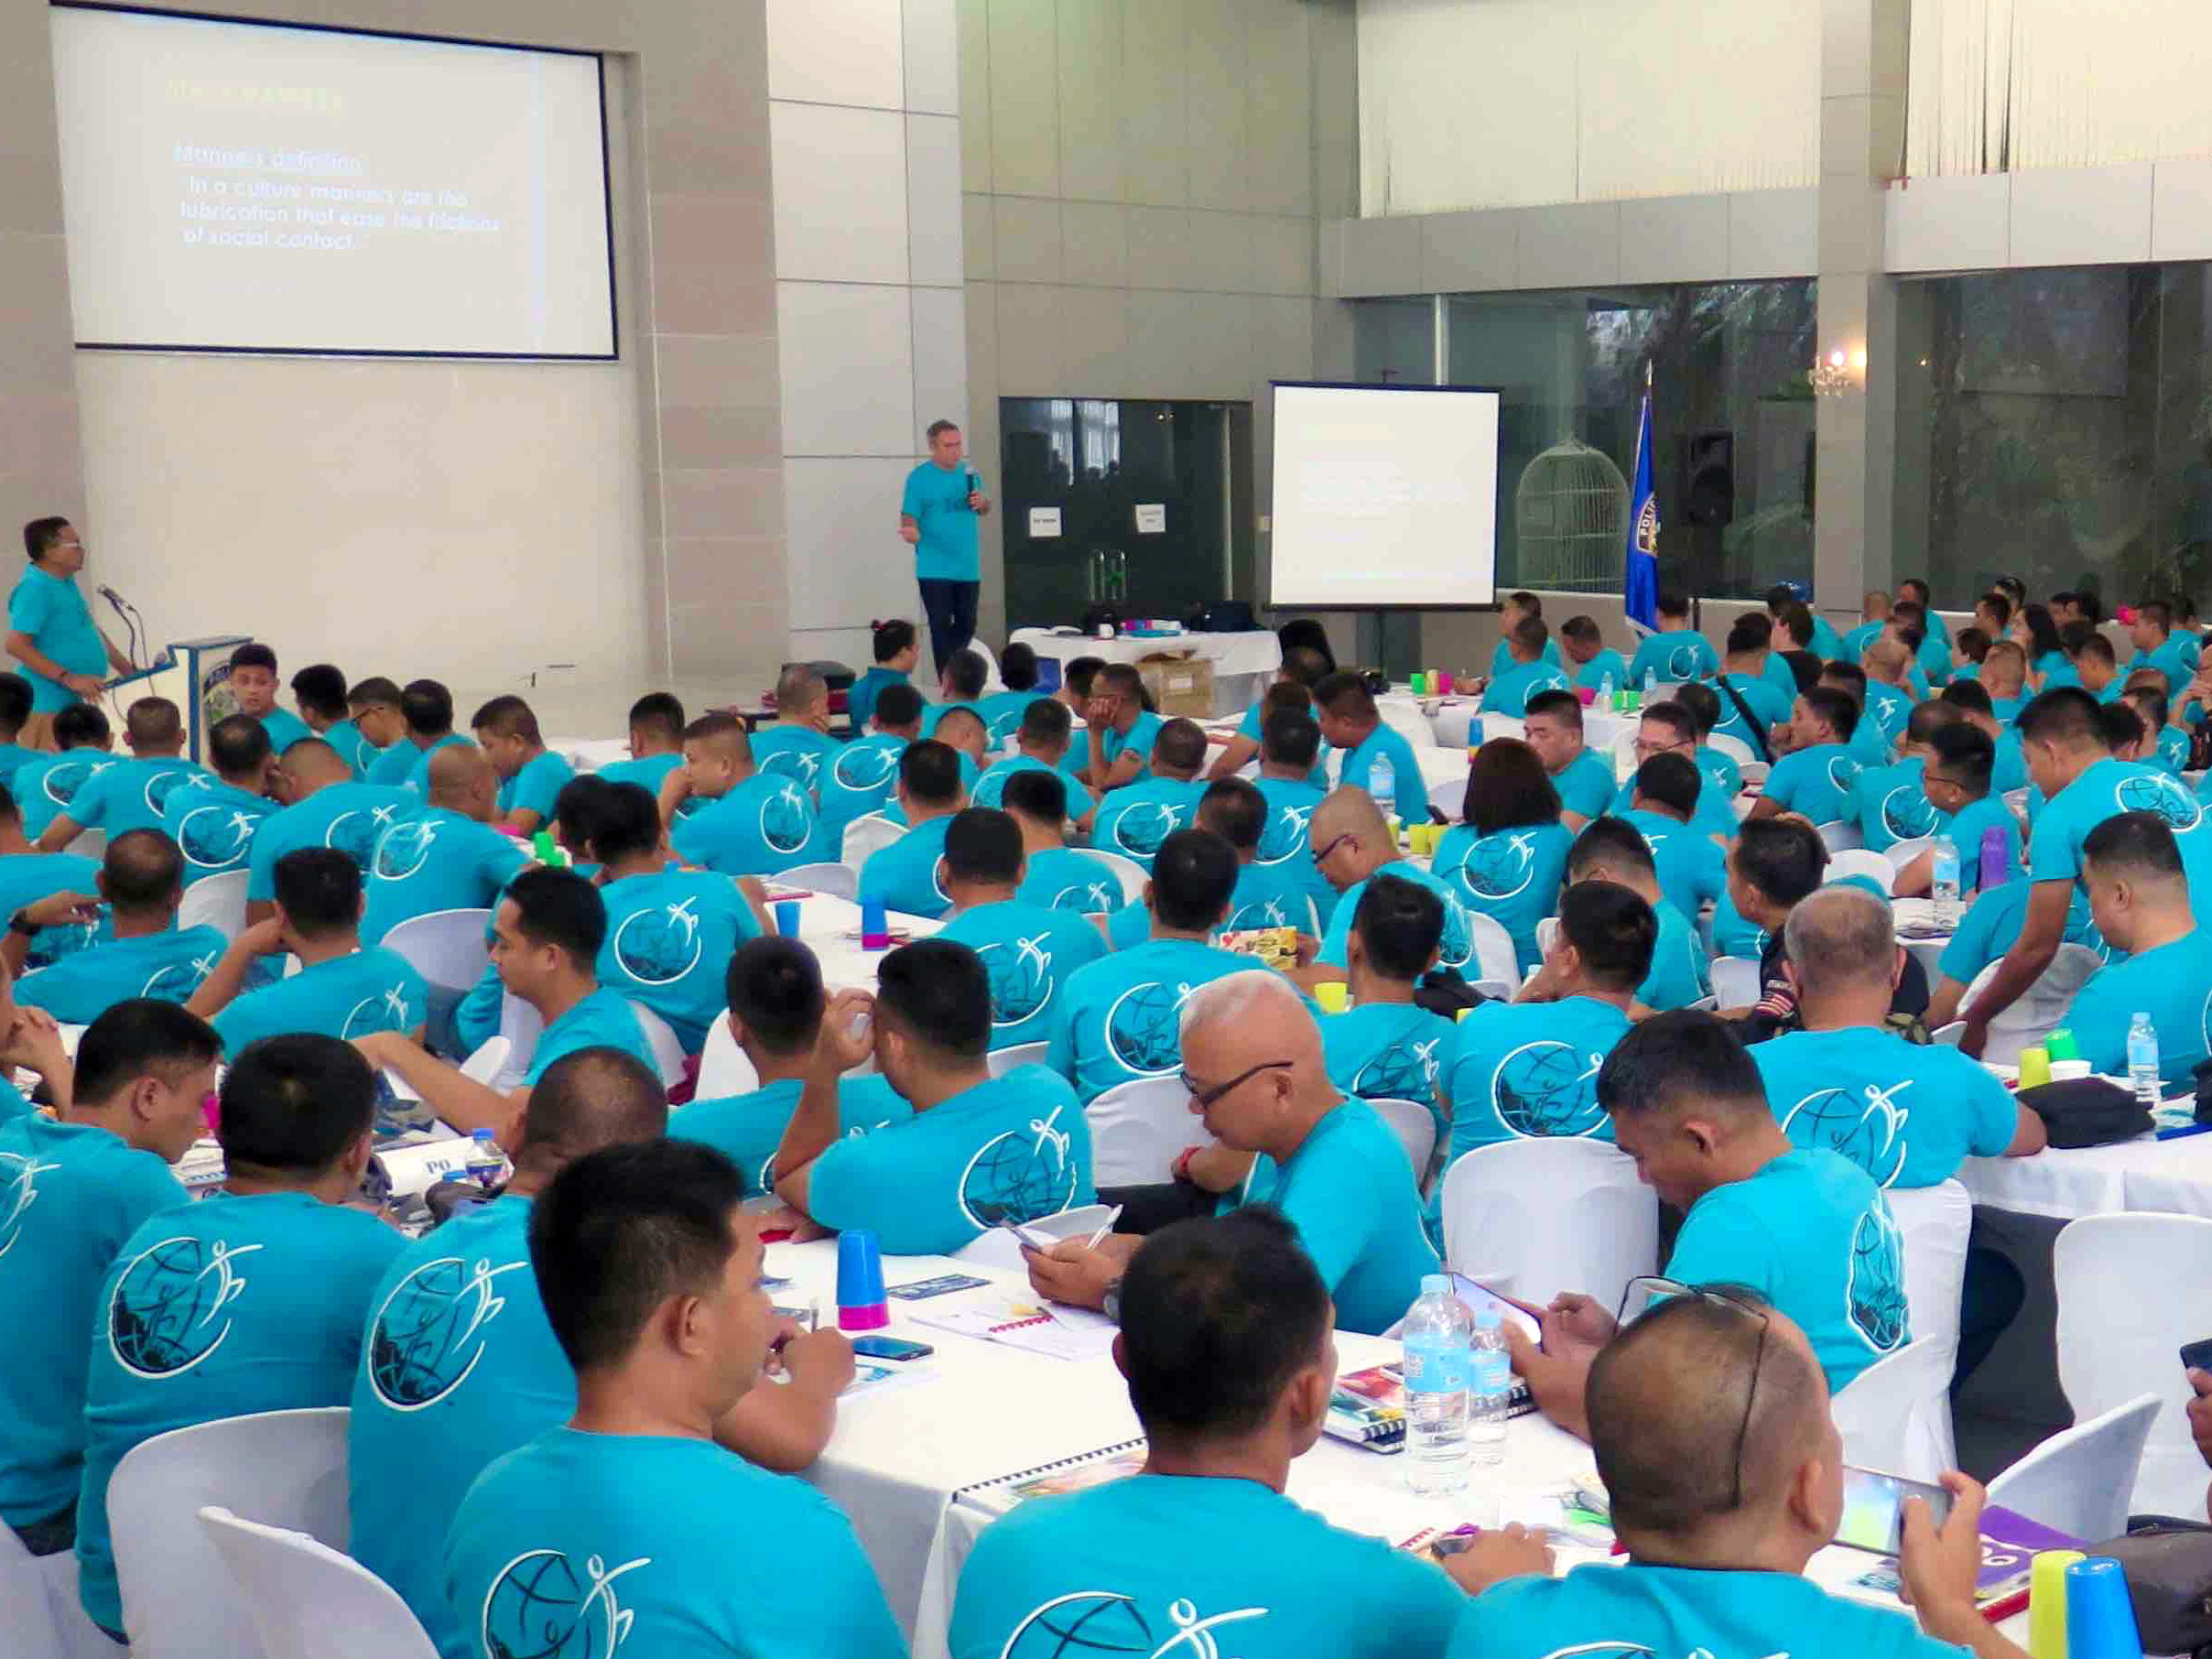 La Fondation pour un monde sans drogue forme des officiers de l’Agence de lutte contre la drogue aux Philippines avec le programme La vérité sur la drogue.